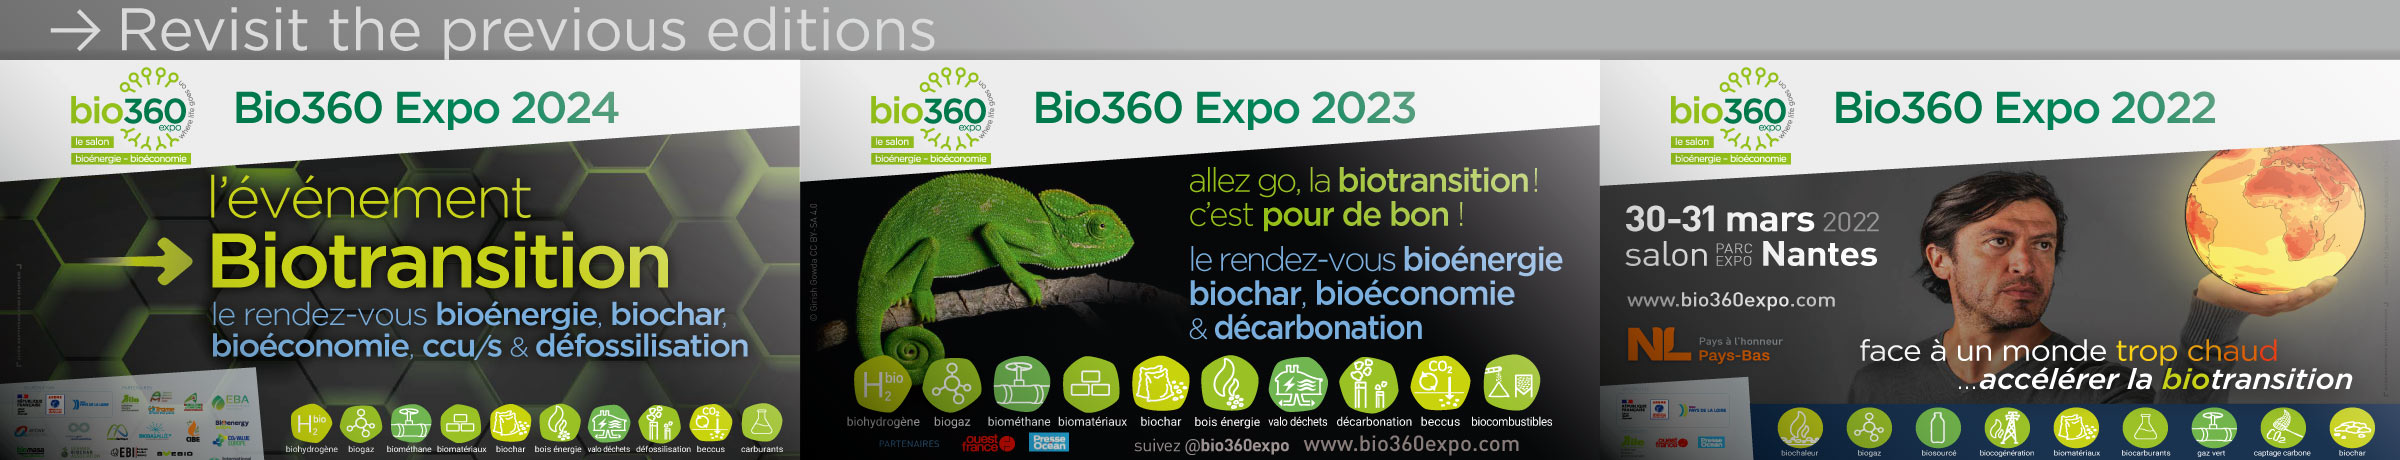 Bio360 Expo 2023-21